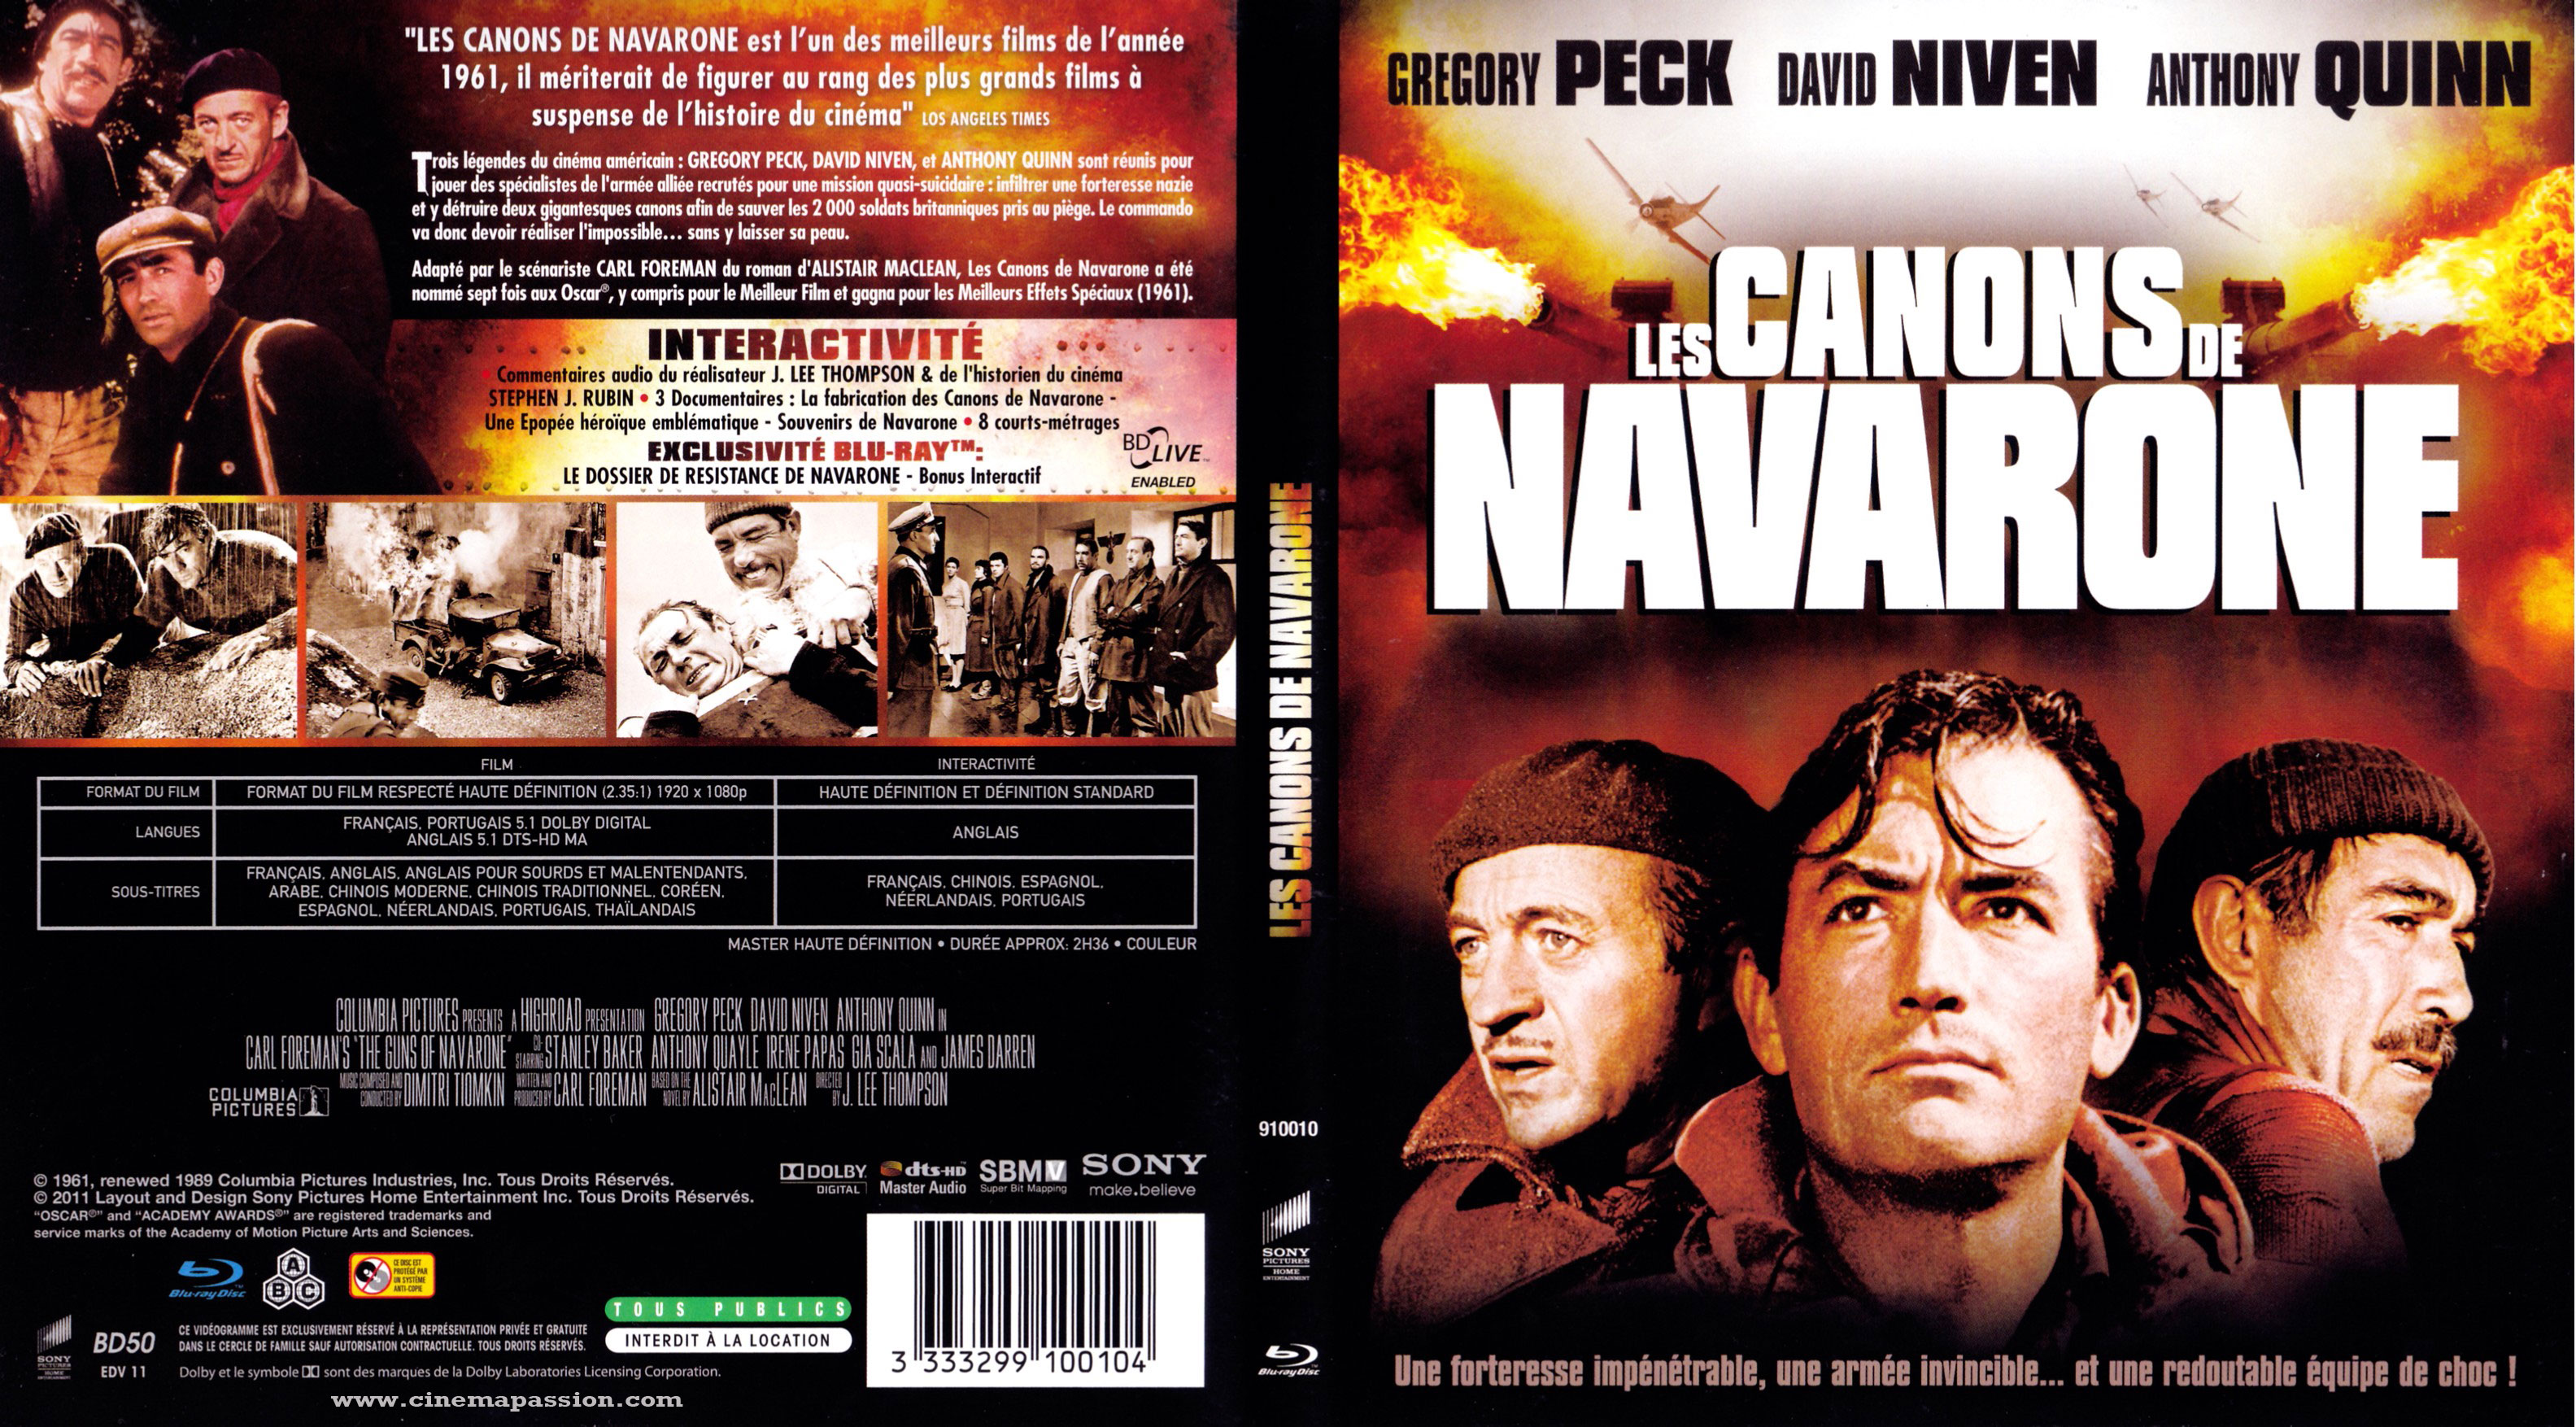 Jaquette DVD Les canons de Navarone (BLU-RAY)